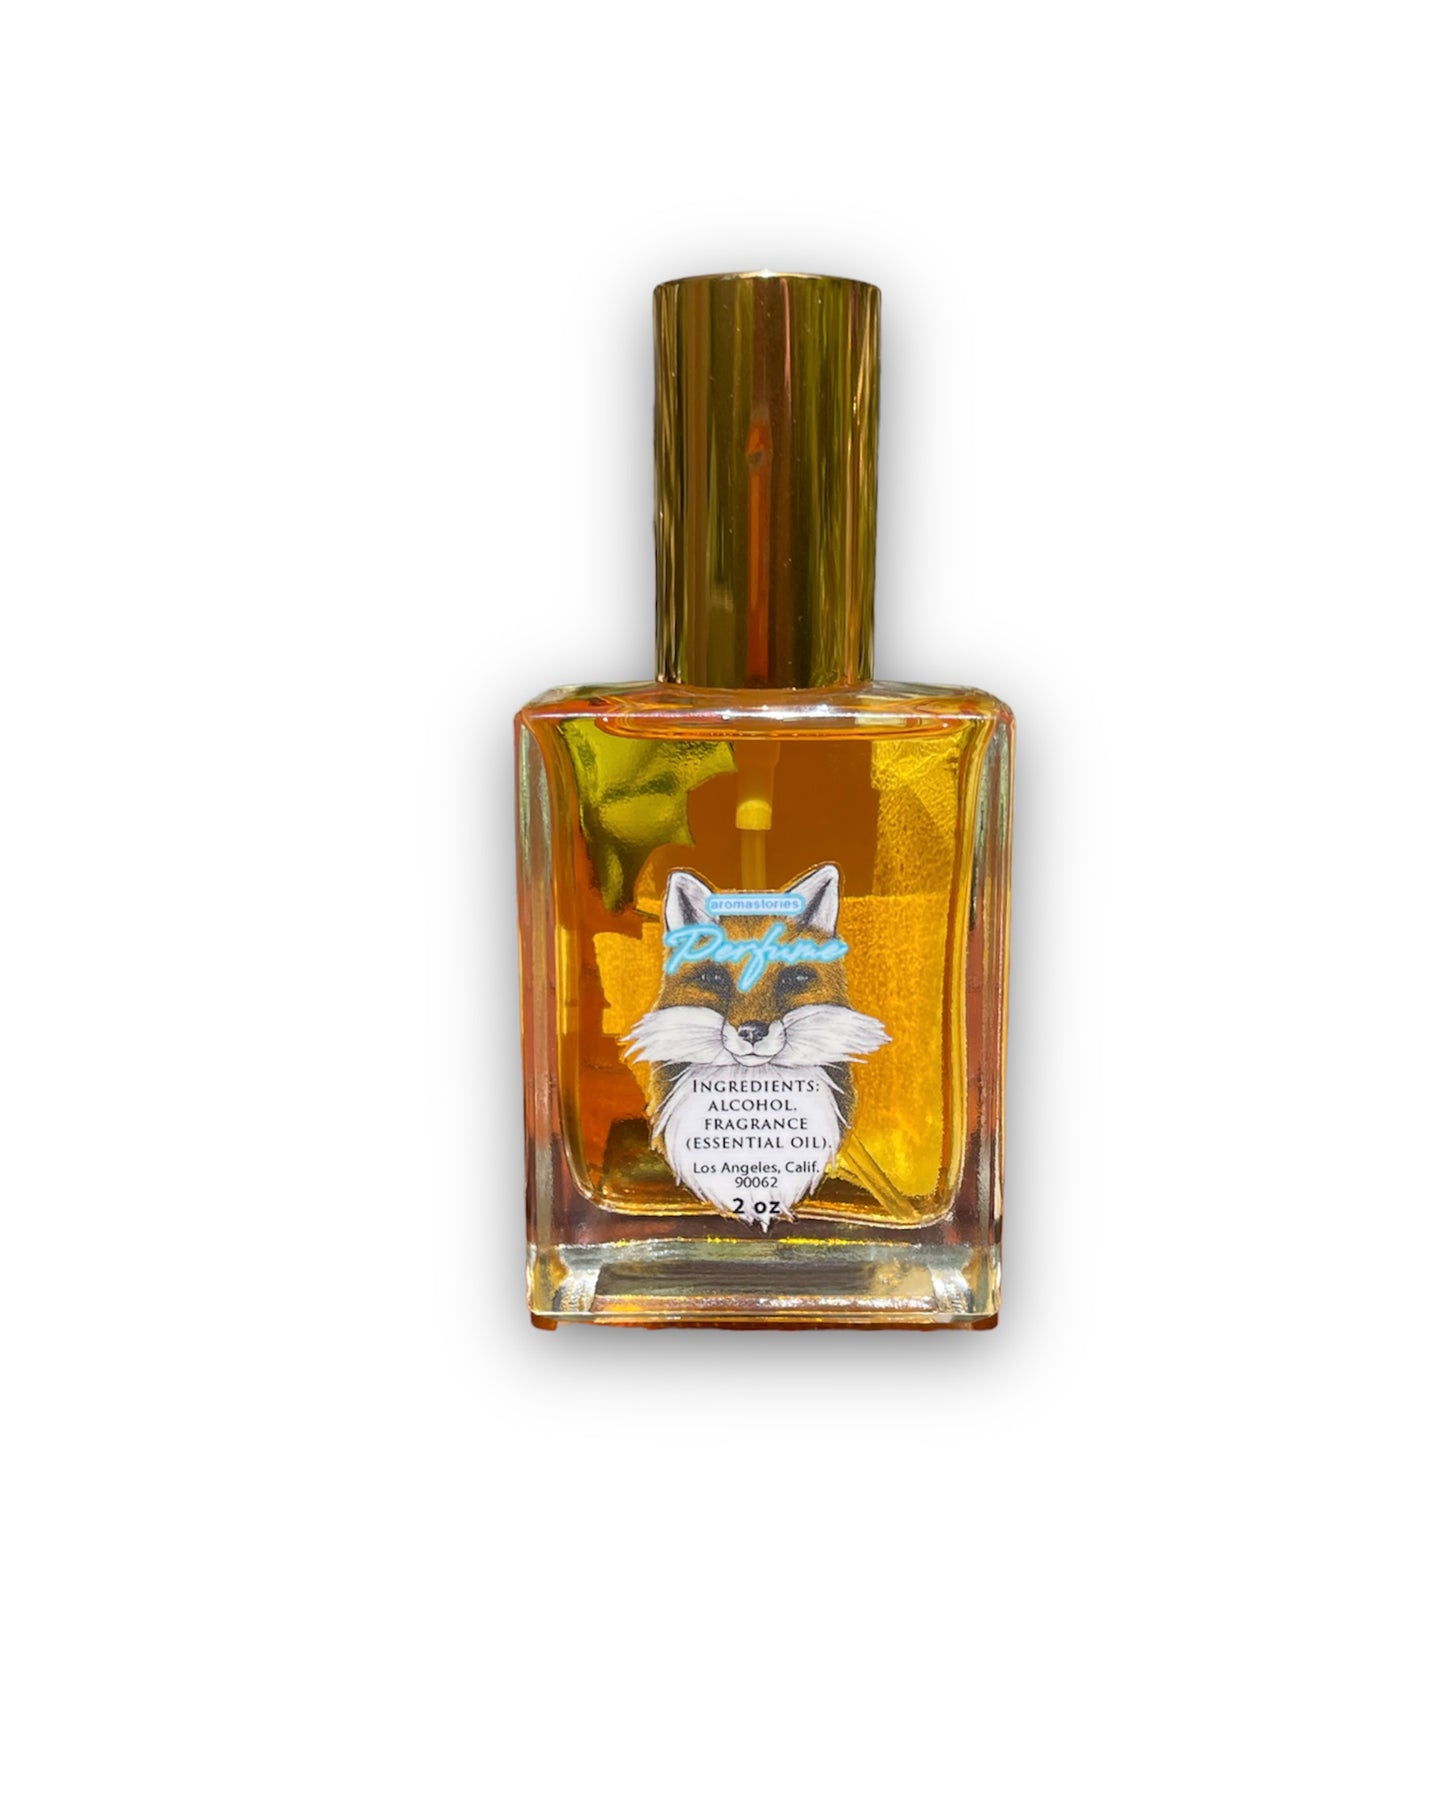 Aromastories Perfume